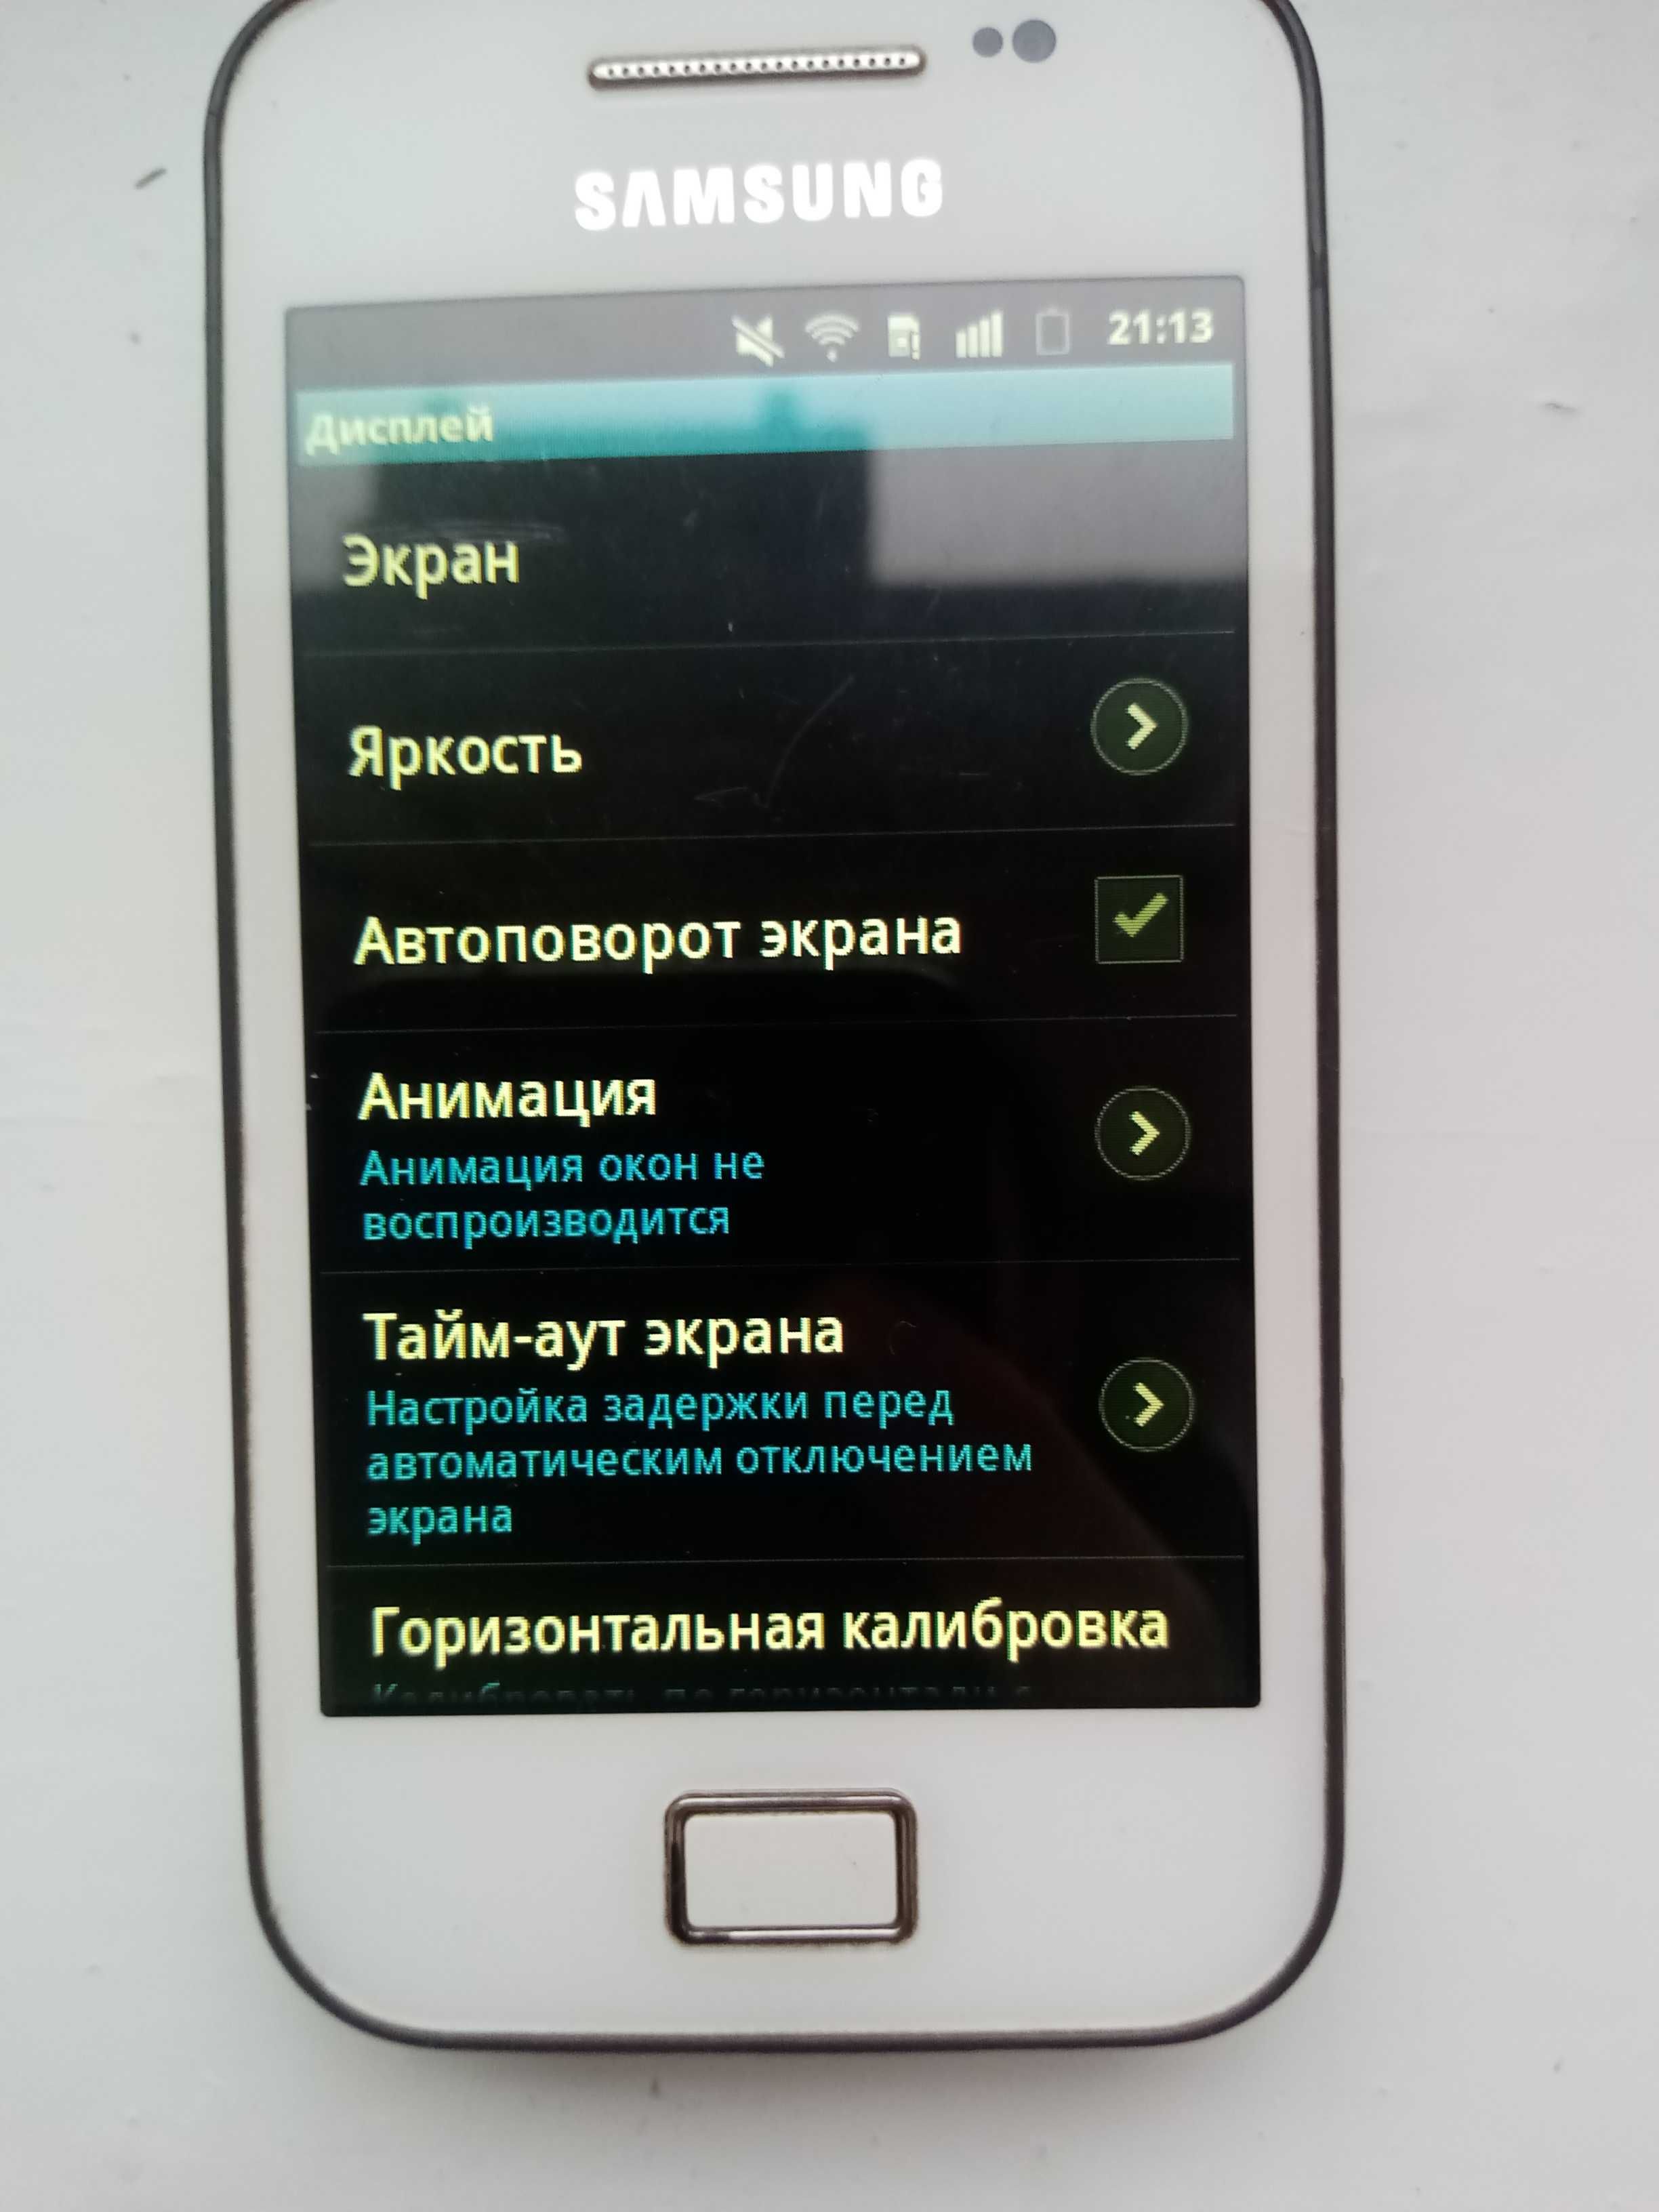 Samsung Galaxy Ace GT-S5830i мобильный телефон